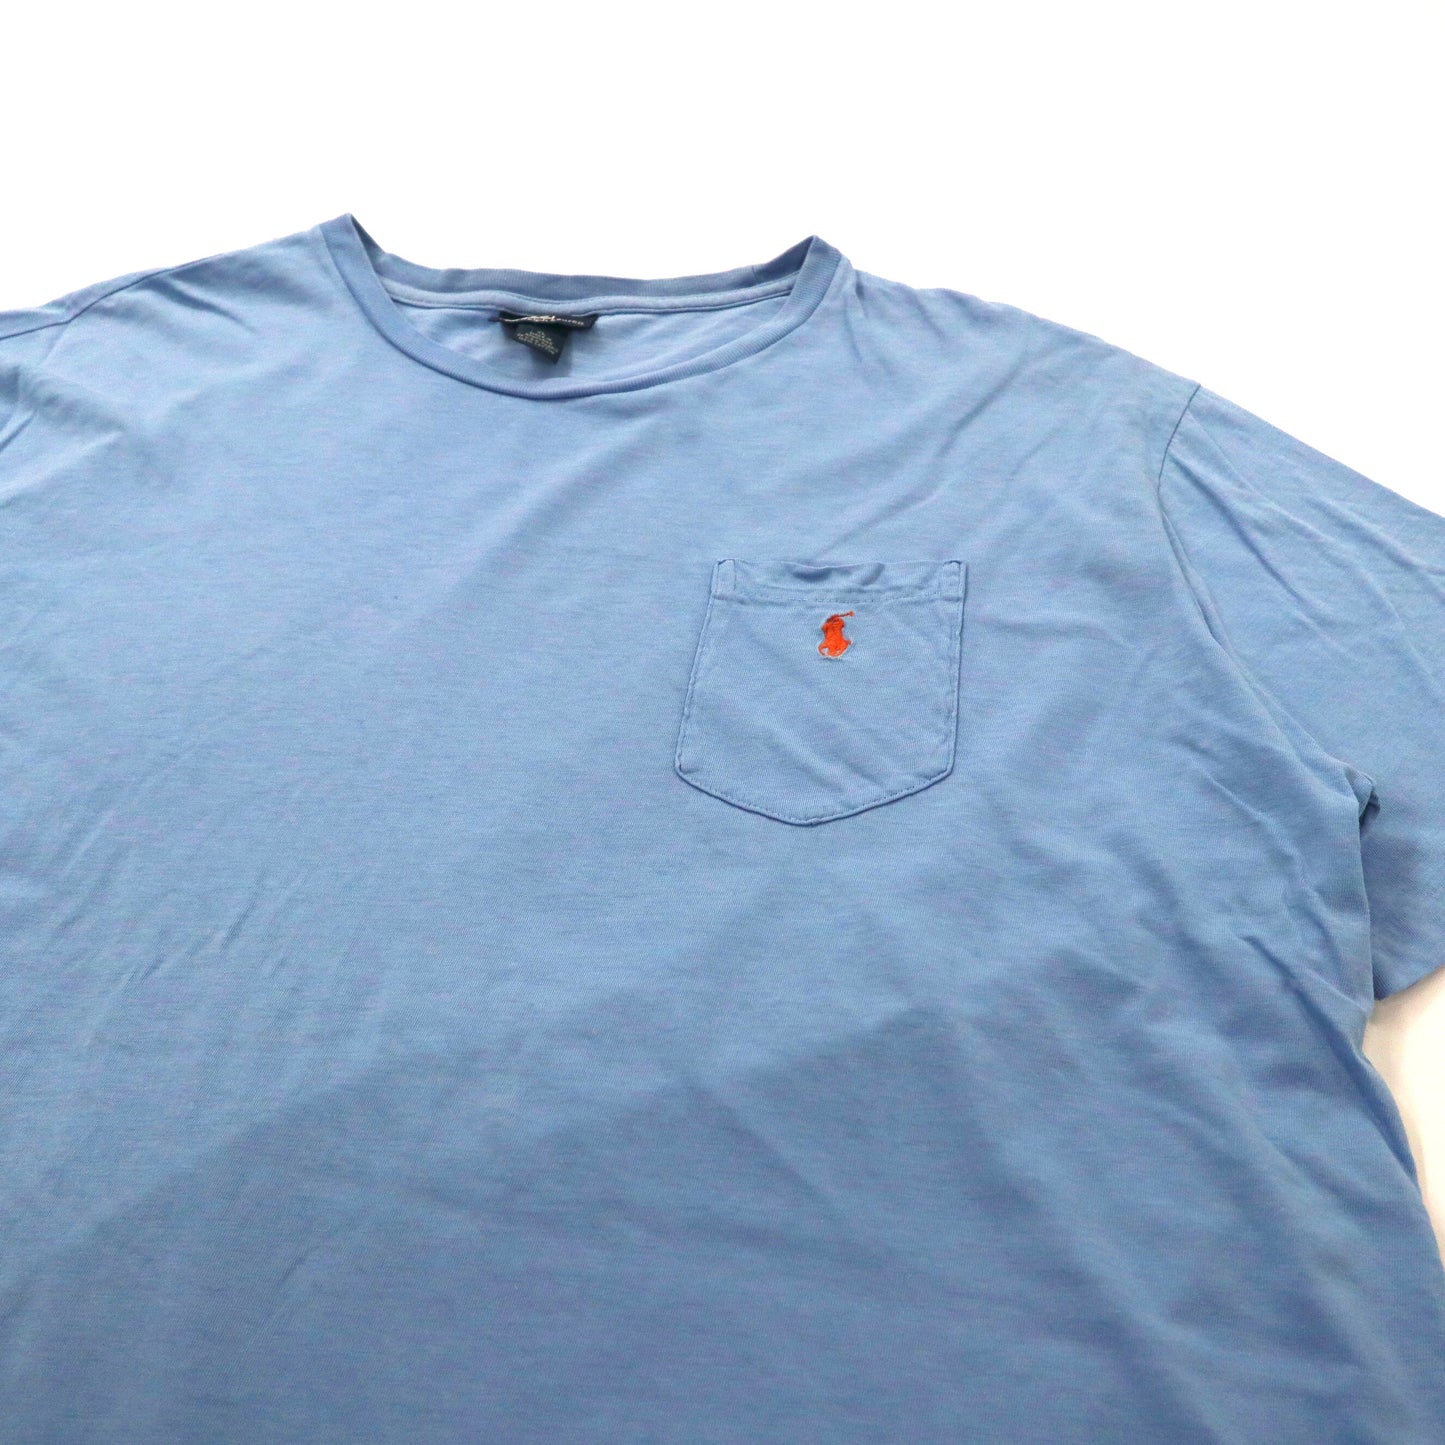 Polo by Ralph Lauren ビッグサイズ ポケットTシャツ XL ブルー コットン スモールポニー刺繍